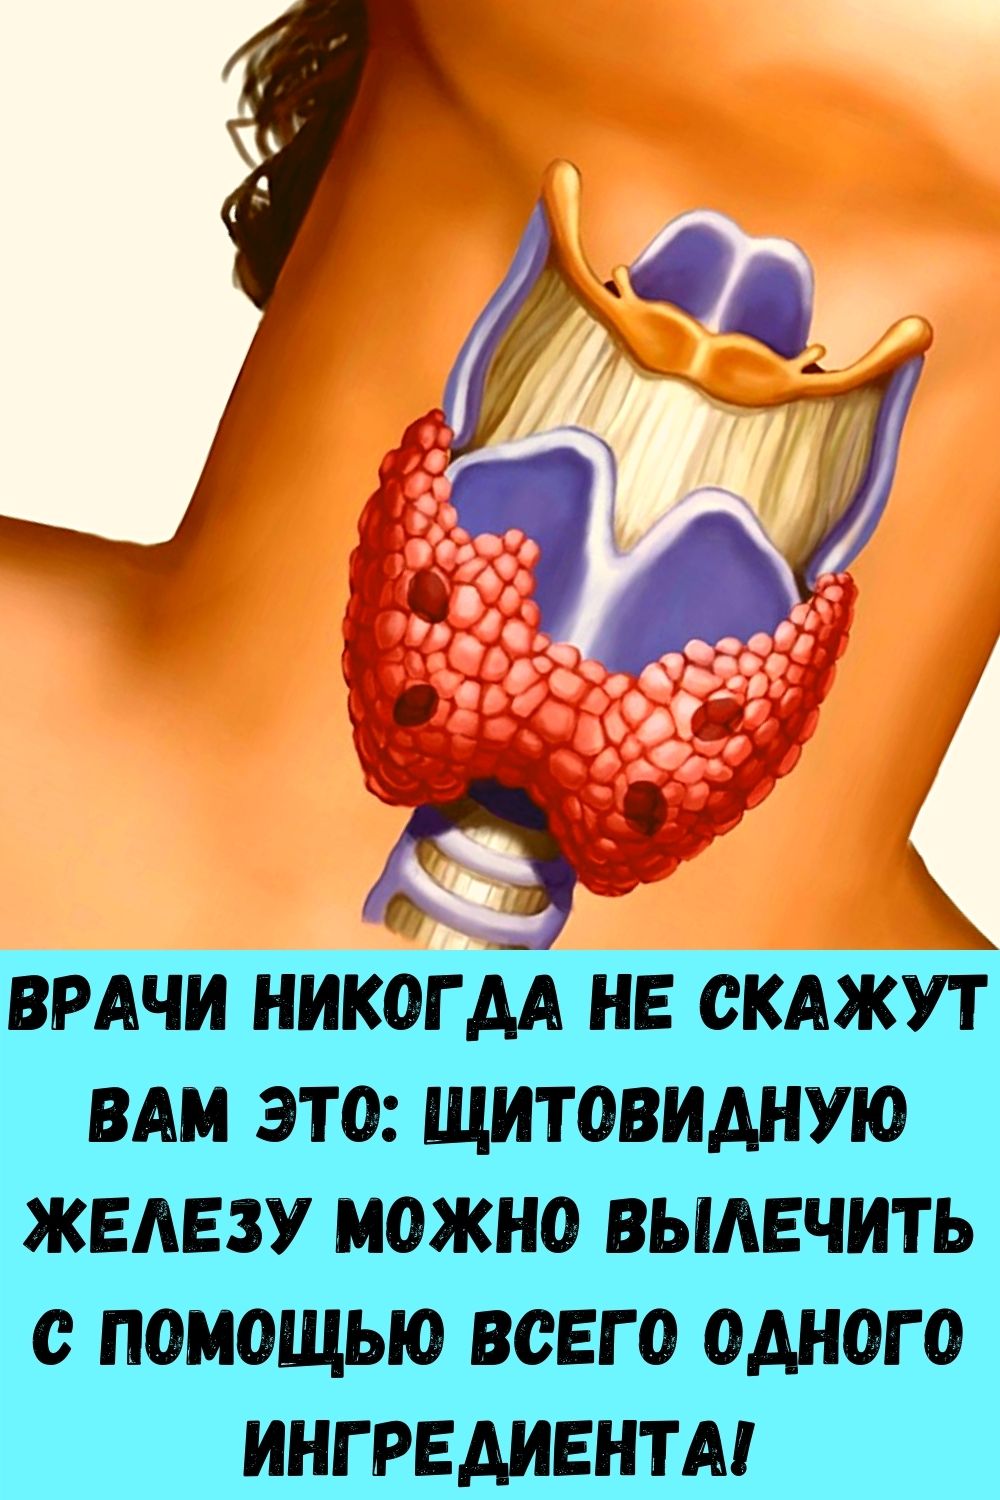 Народное лечение узлов щитовидной железы. Проверьте щитовидную железу. Жжение в щитовидной железе. Щитовидная железа у женщин.